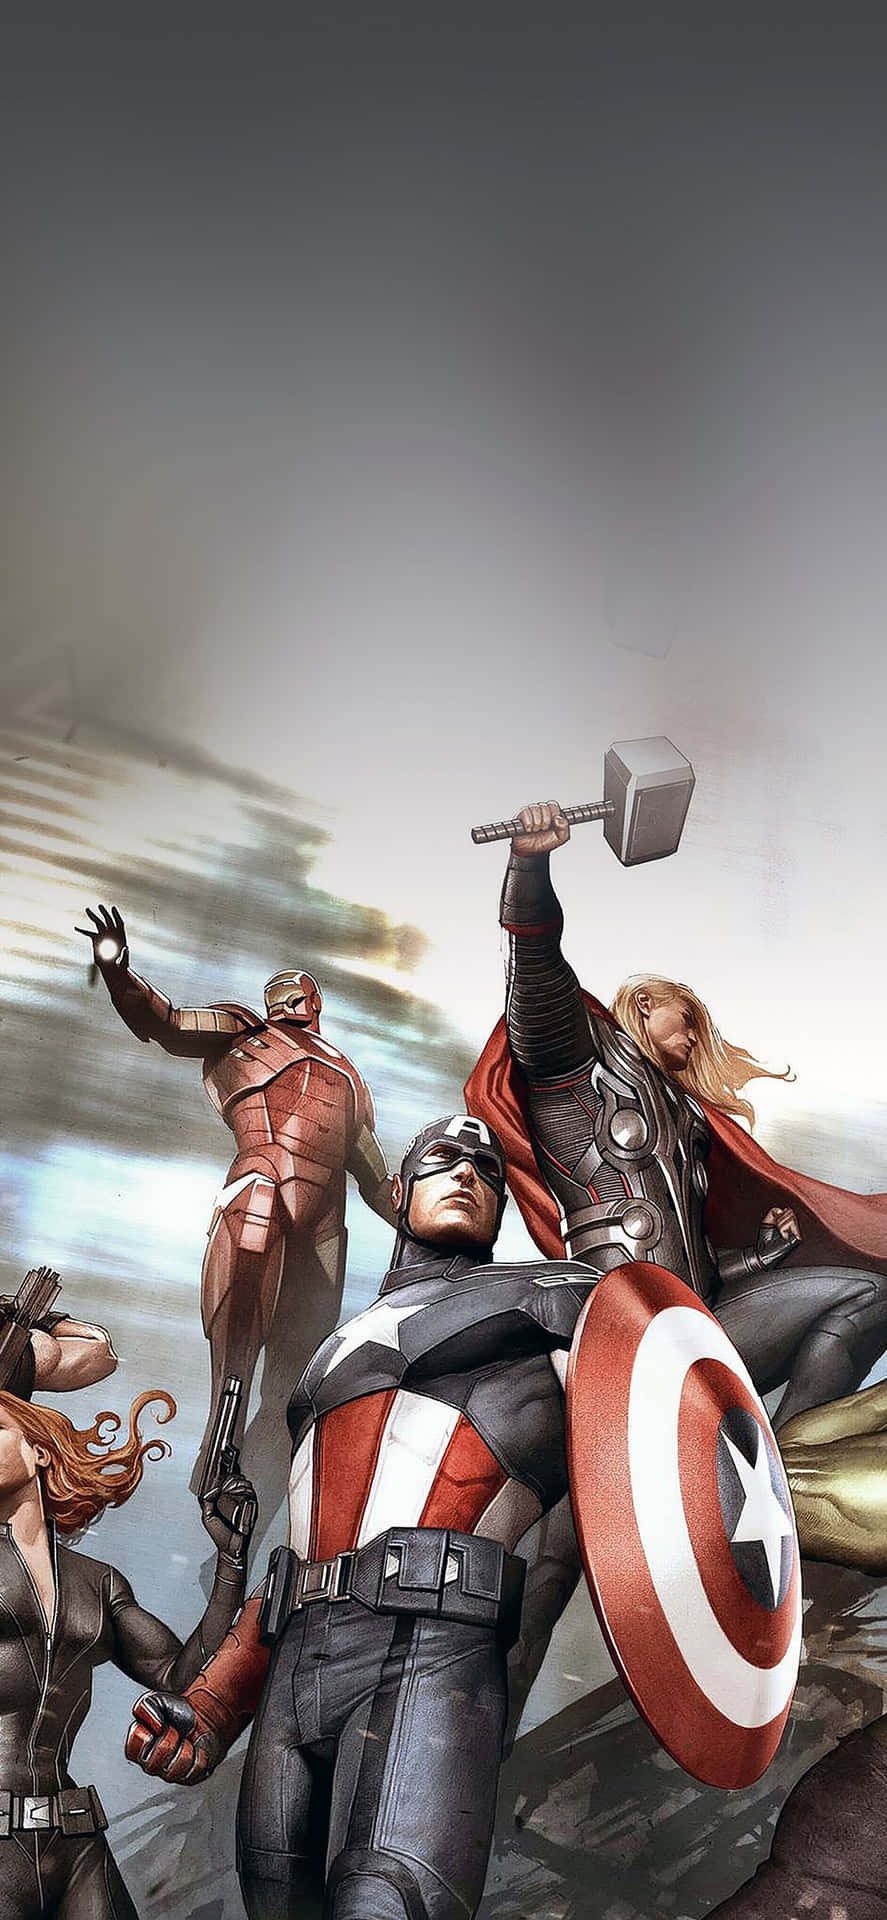 Stellensie Die Helden Der Erde Mit Dem Neuen Iphone Xs Marvel's Avengers Zusammen.